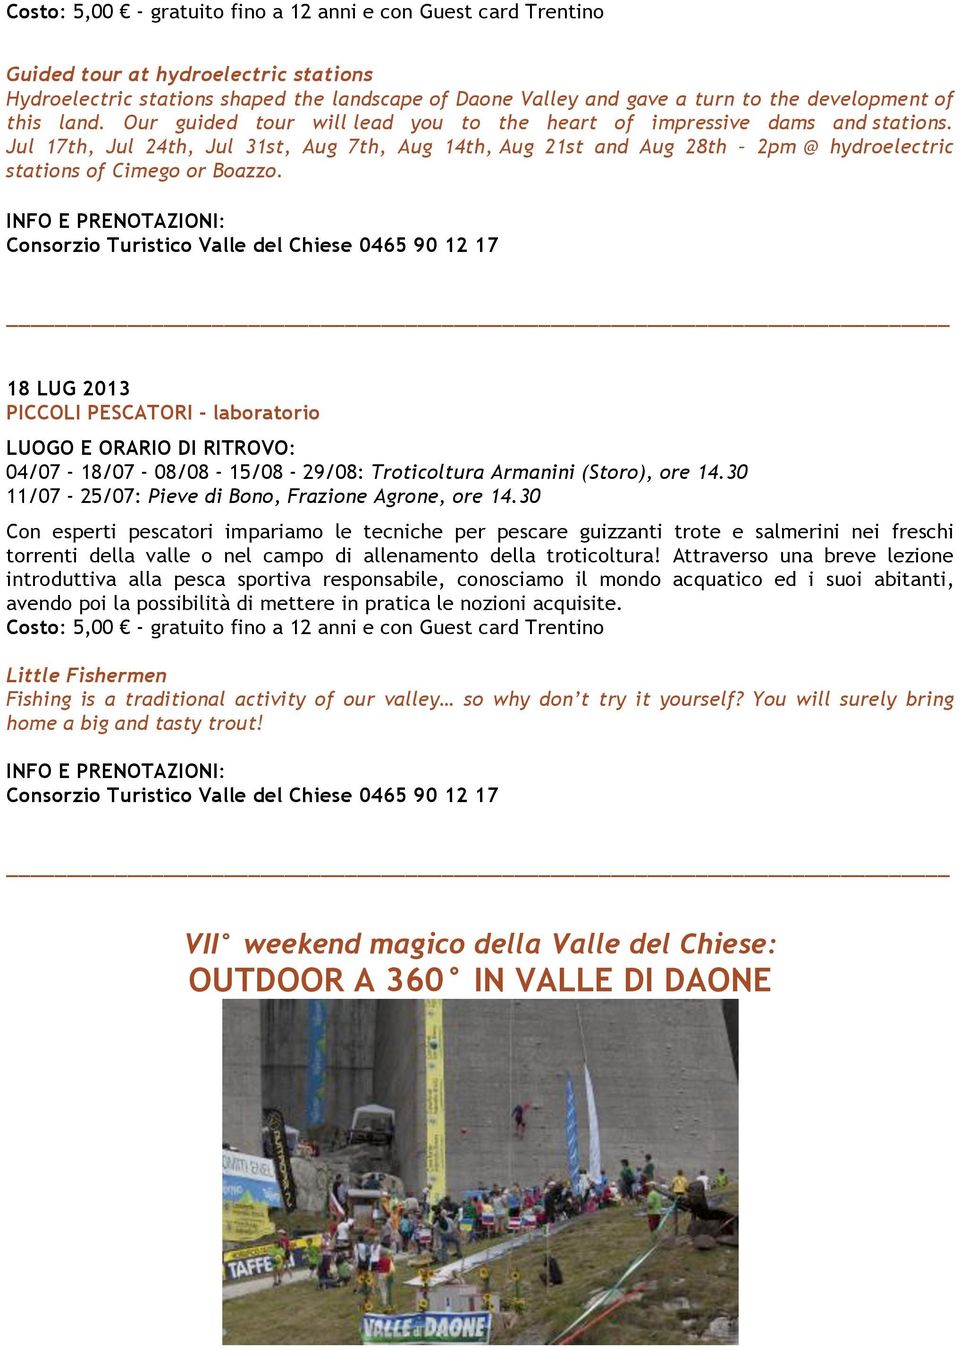 18 LUG 2013 PICCOLI PESCATORI - laboratorio 04/07-18/07-08/08-15/08-29/08: Troticoltura Armanini (Storo), ore 14.30 11/07-25/07: Pieve di Bono, Frazione Agrone, ore 14.